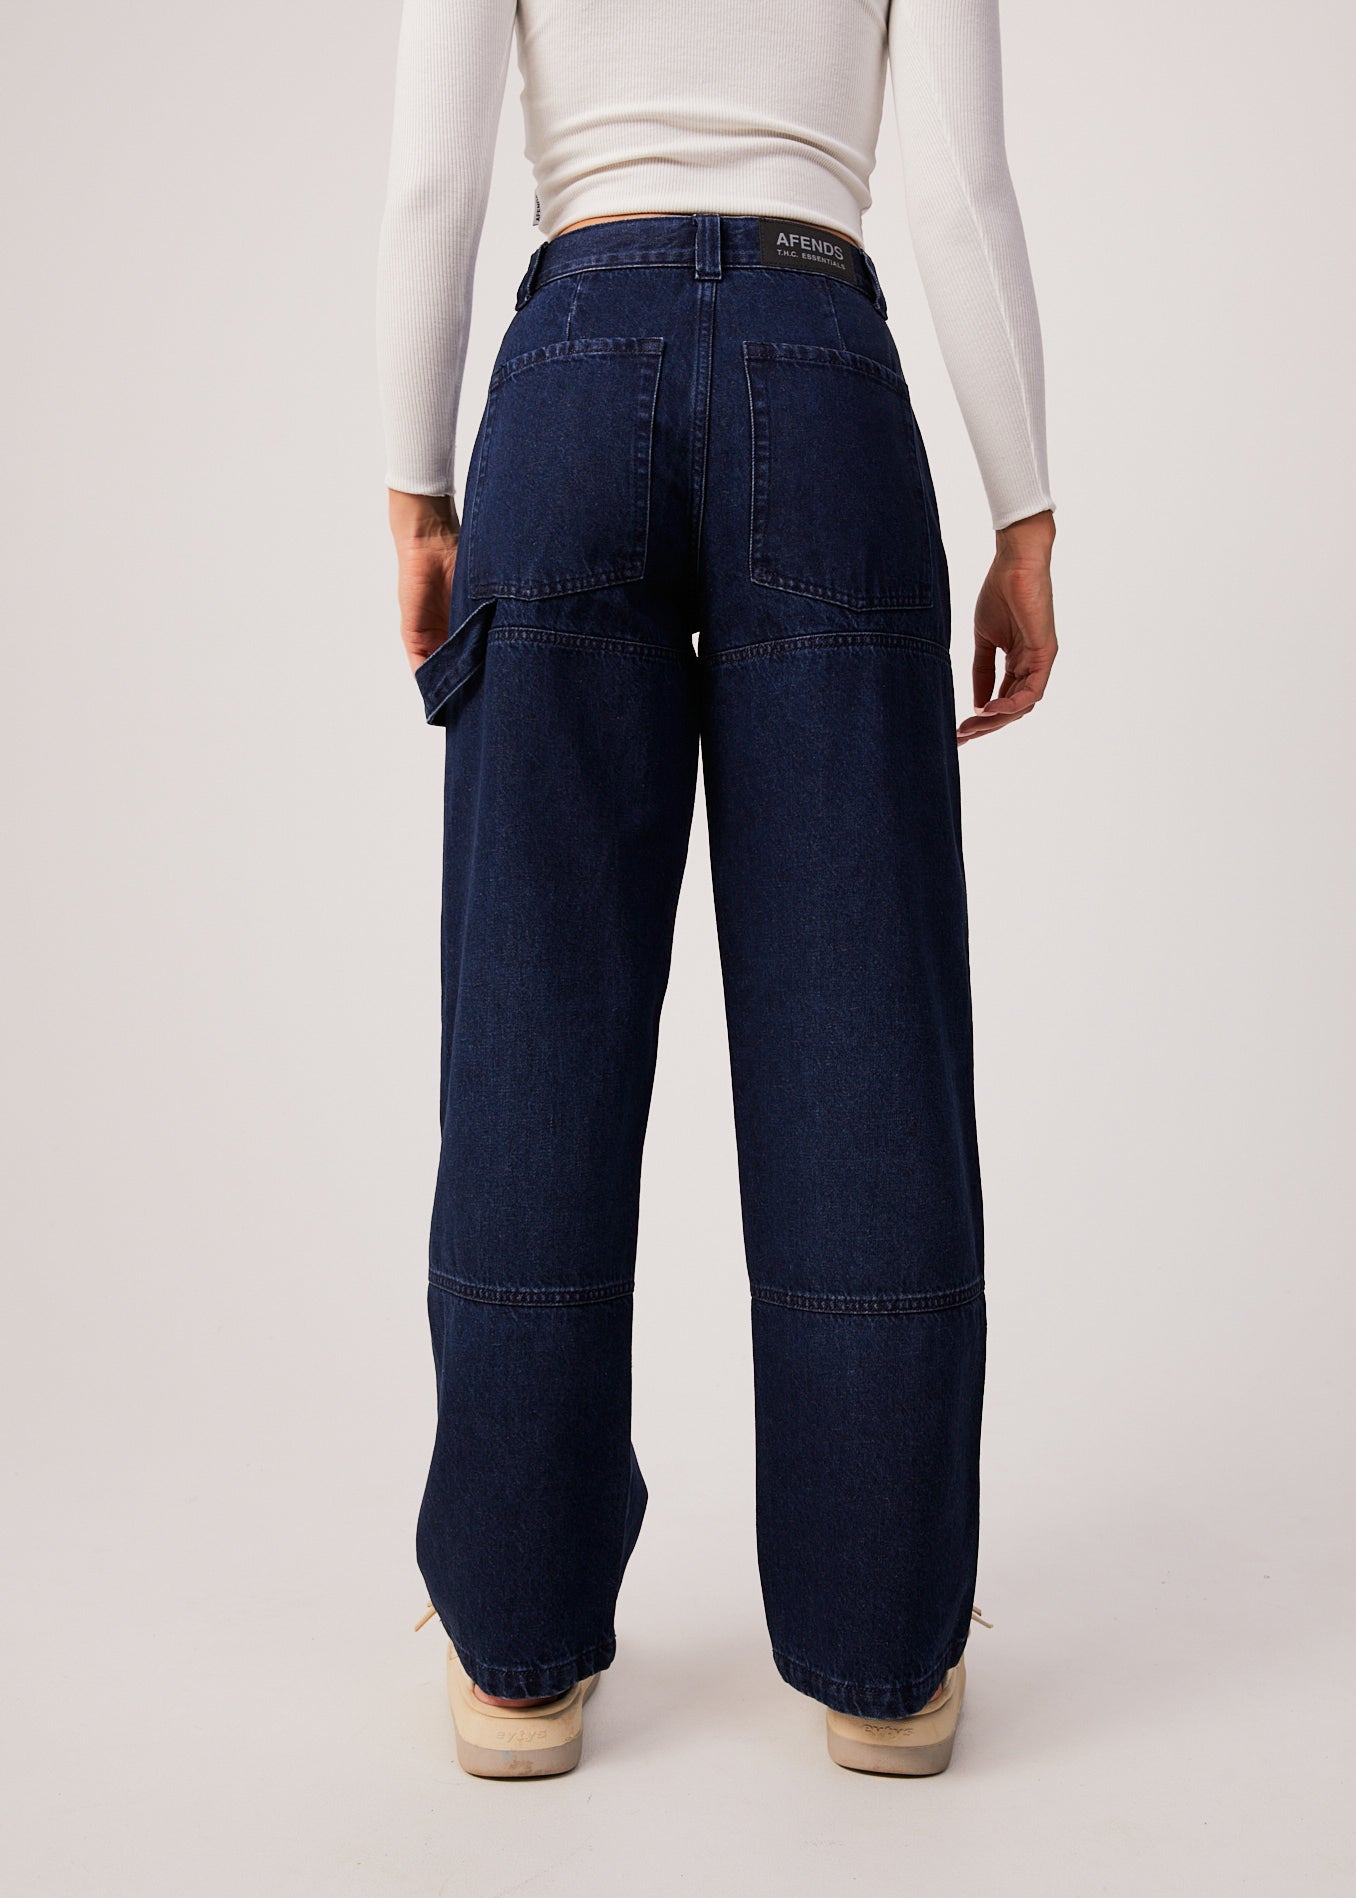 Afends Womens Moss - Hemp Denim Carpenter Jeans - Original Rinse 